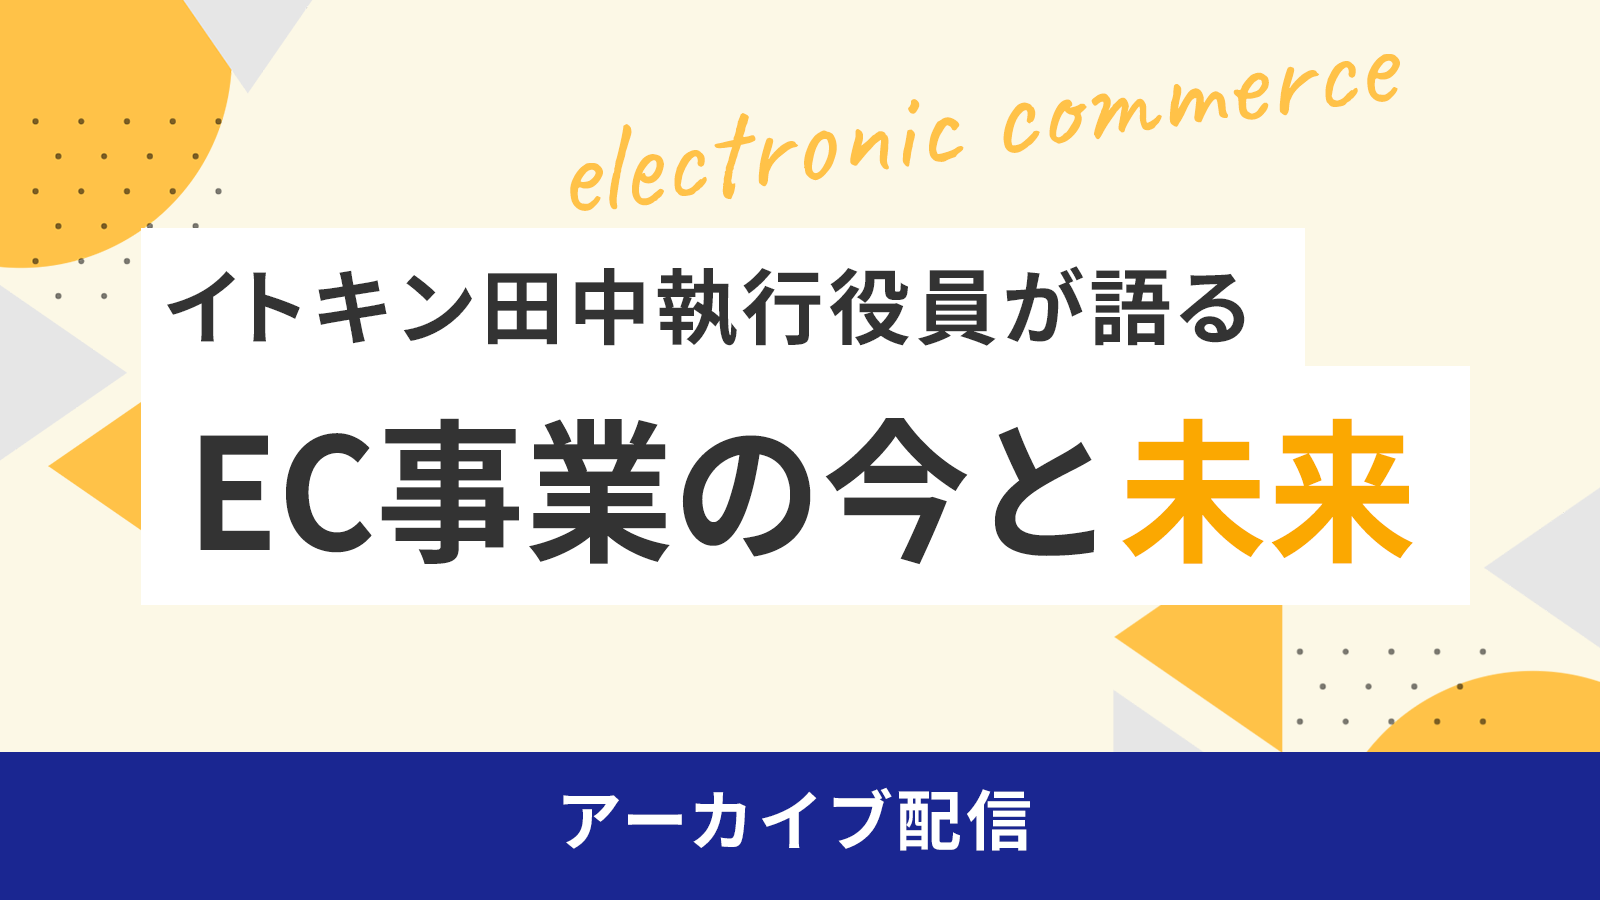 イトキン田中執行役員が語る「EC事業の今と未来」アーカイブ